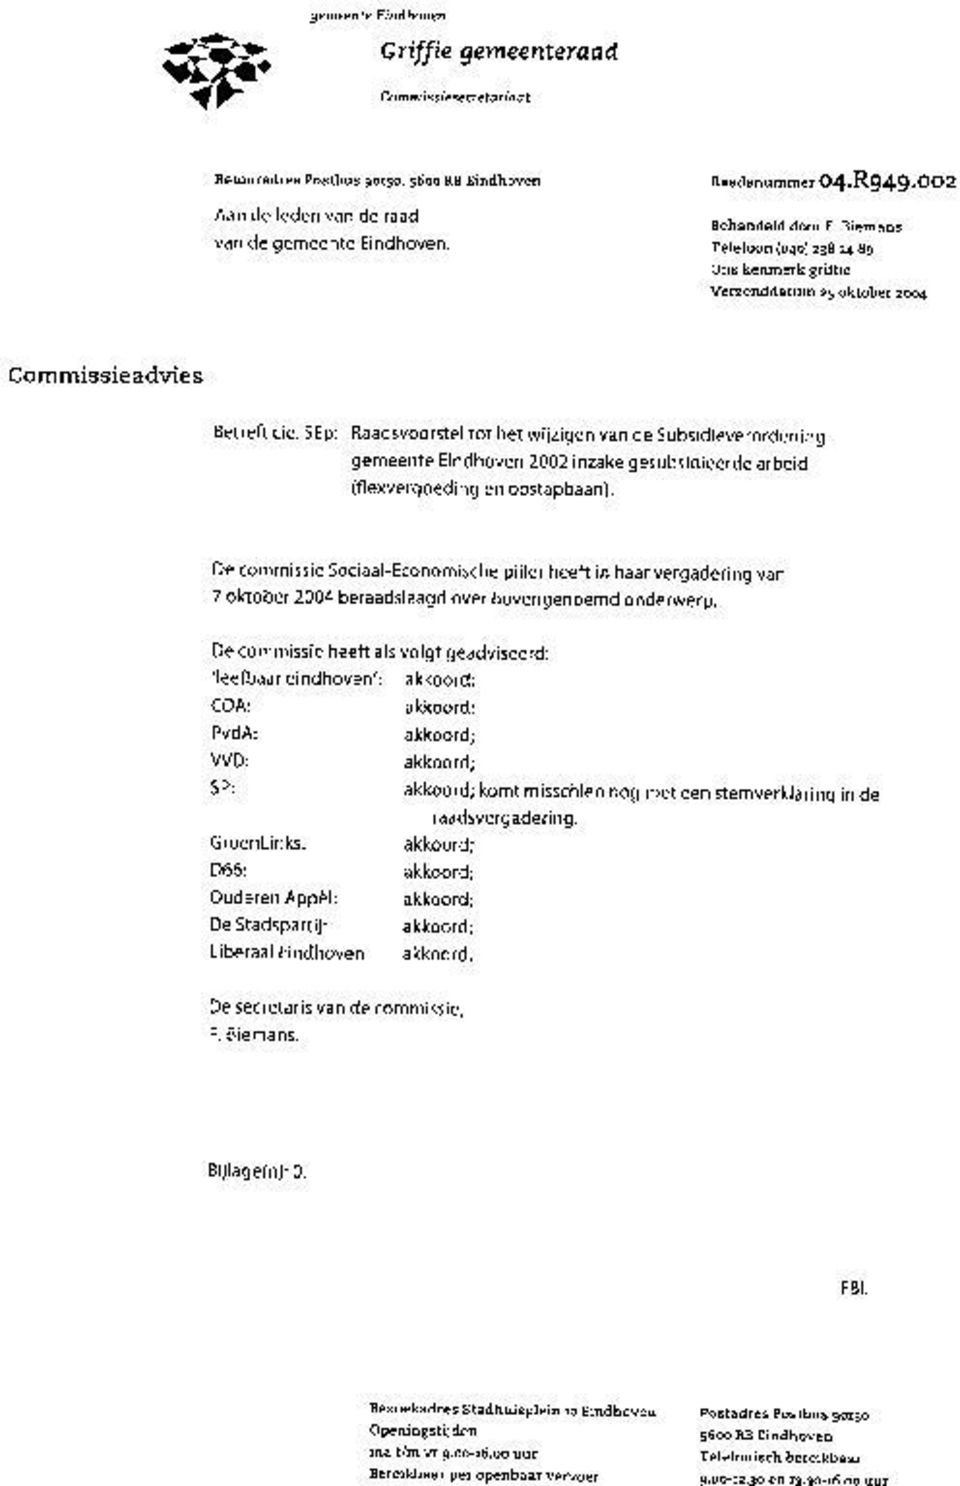 SEp: Raadsvoorstel tot het wijzigen van de Subsidieverordening gemeente Eindhoven 2002 inzake gesubsidieerde arbeid (flexvergoeding en opstapbaan).